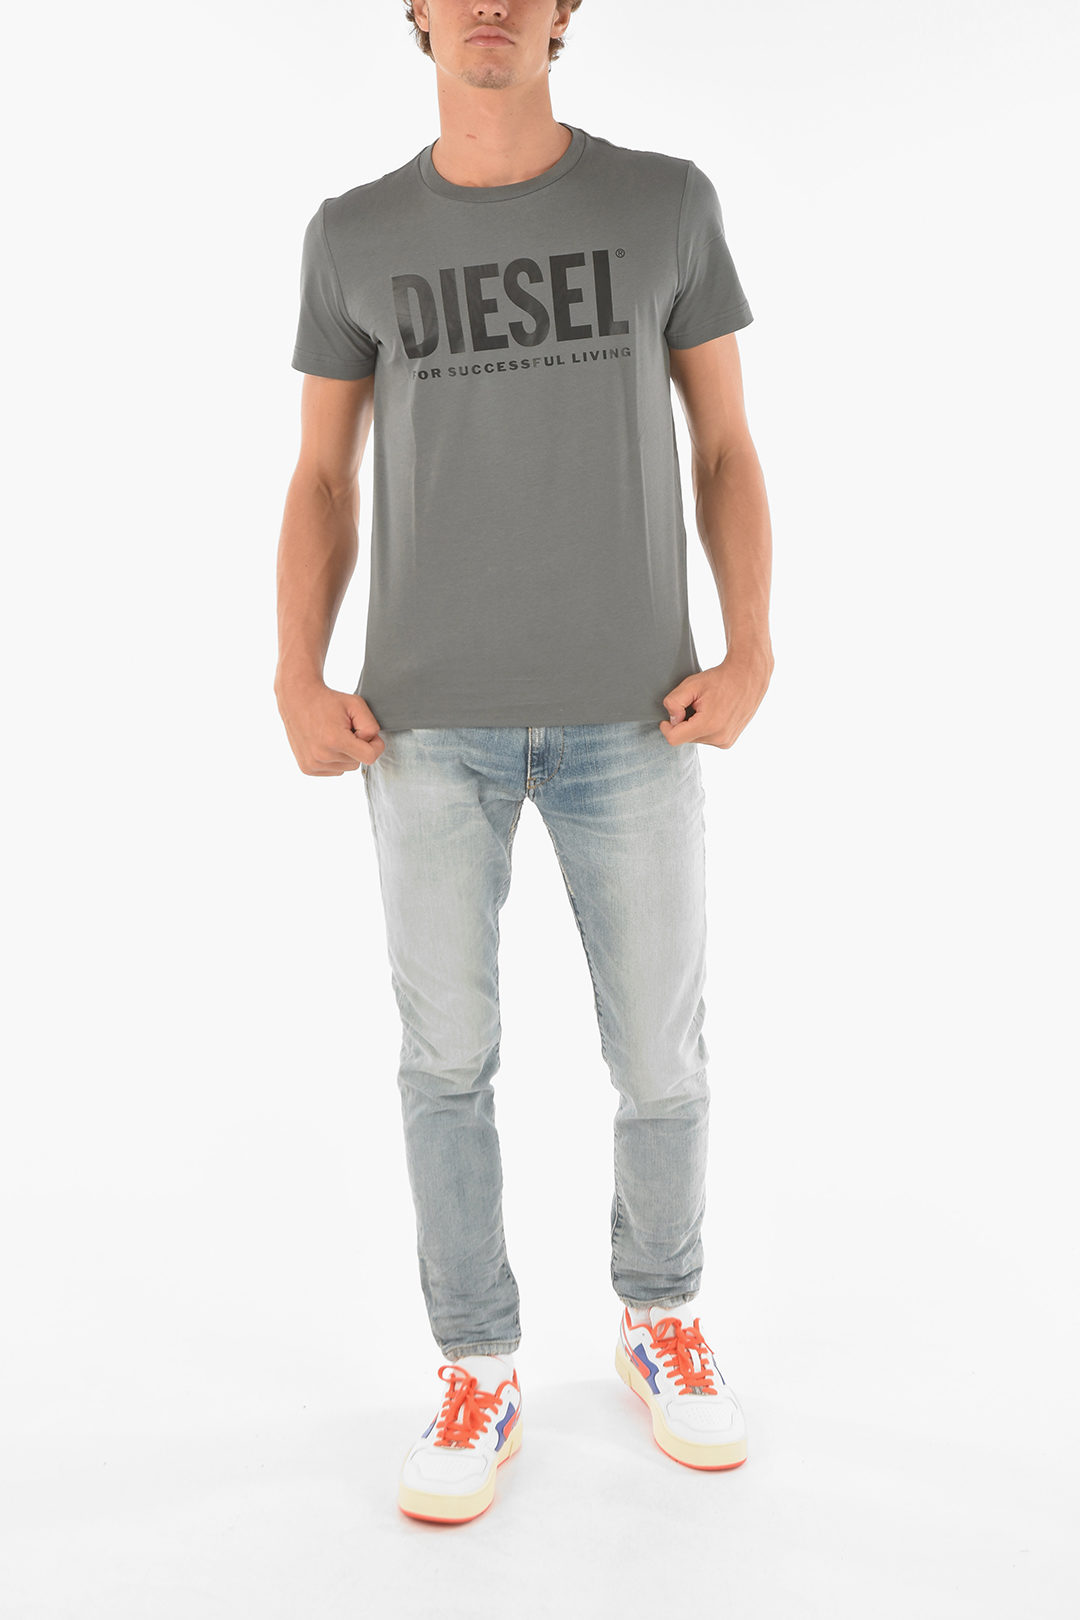 Diesel Front Logo men - Glamood Outlet